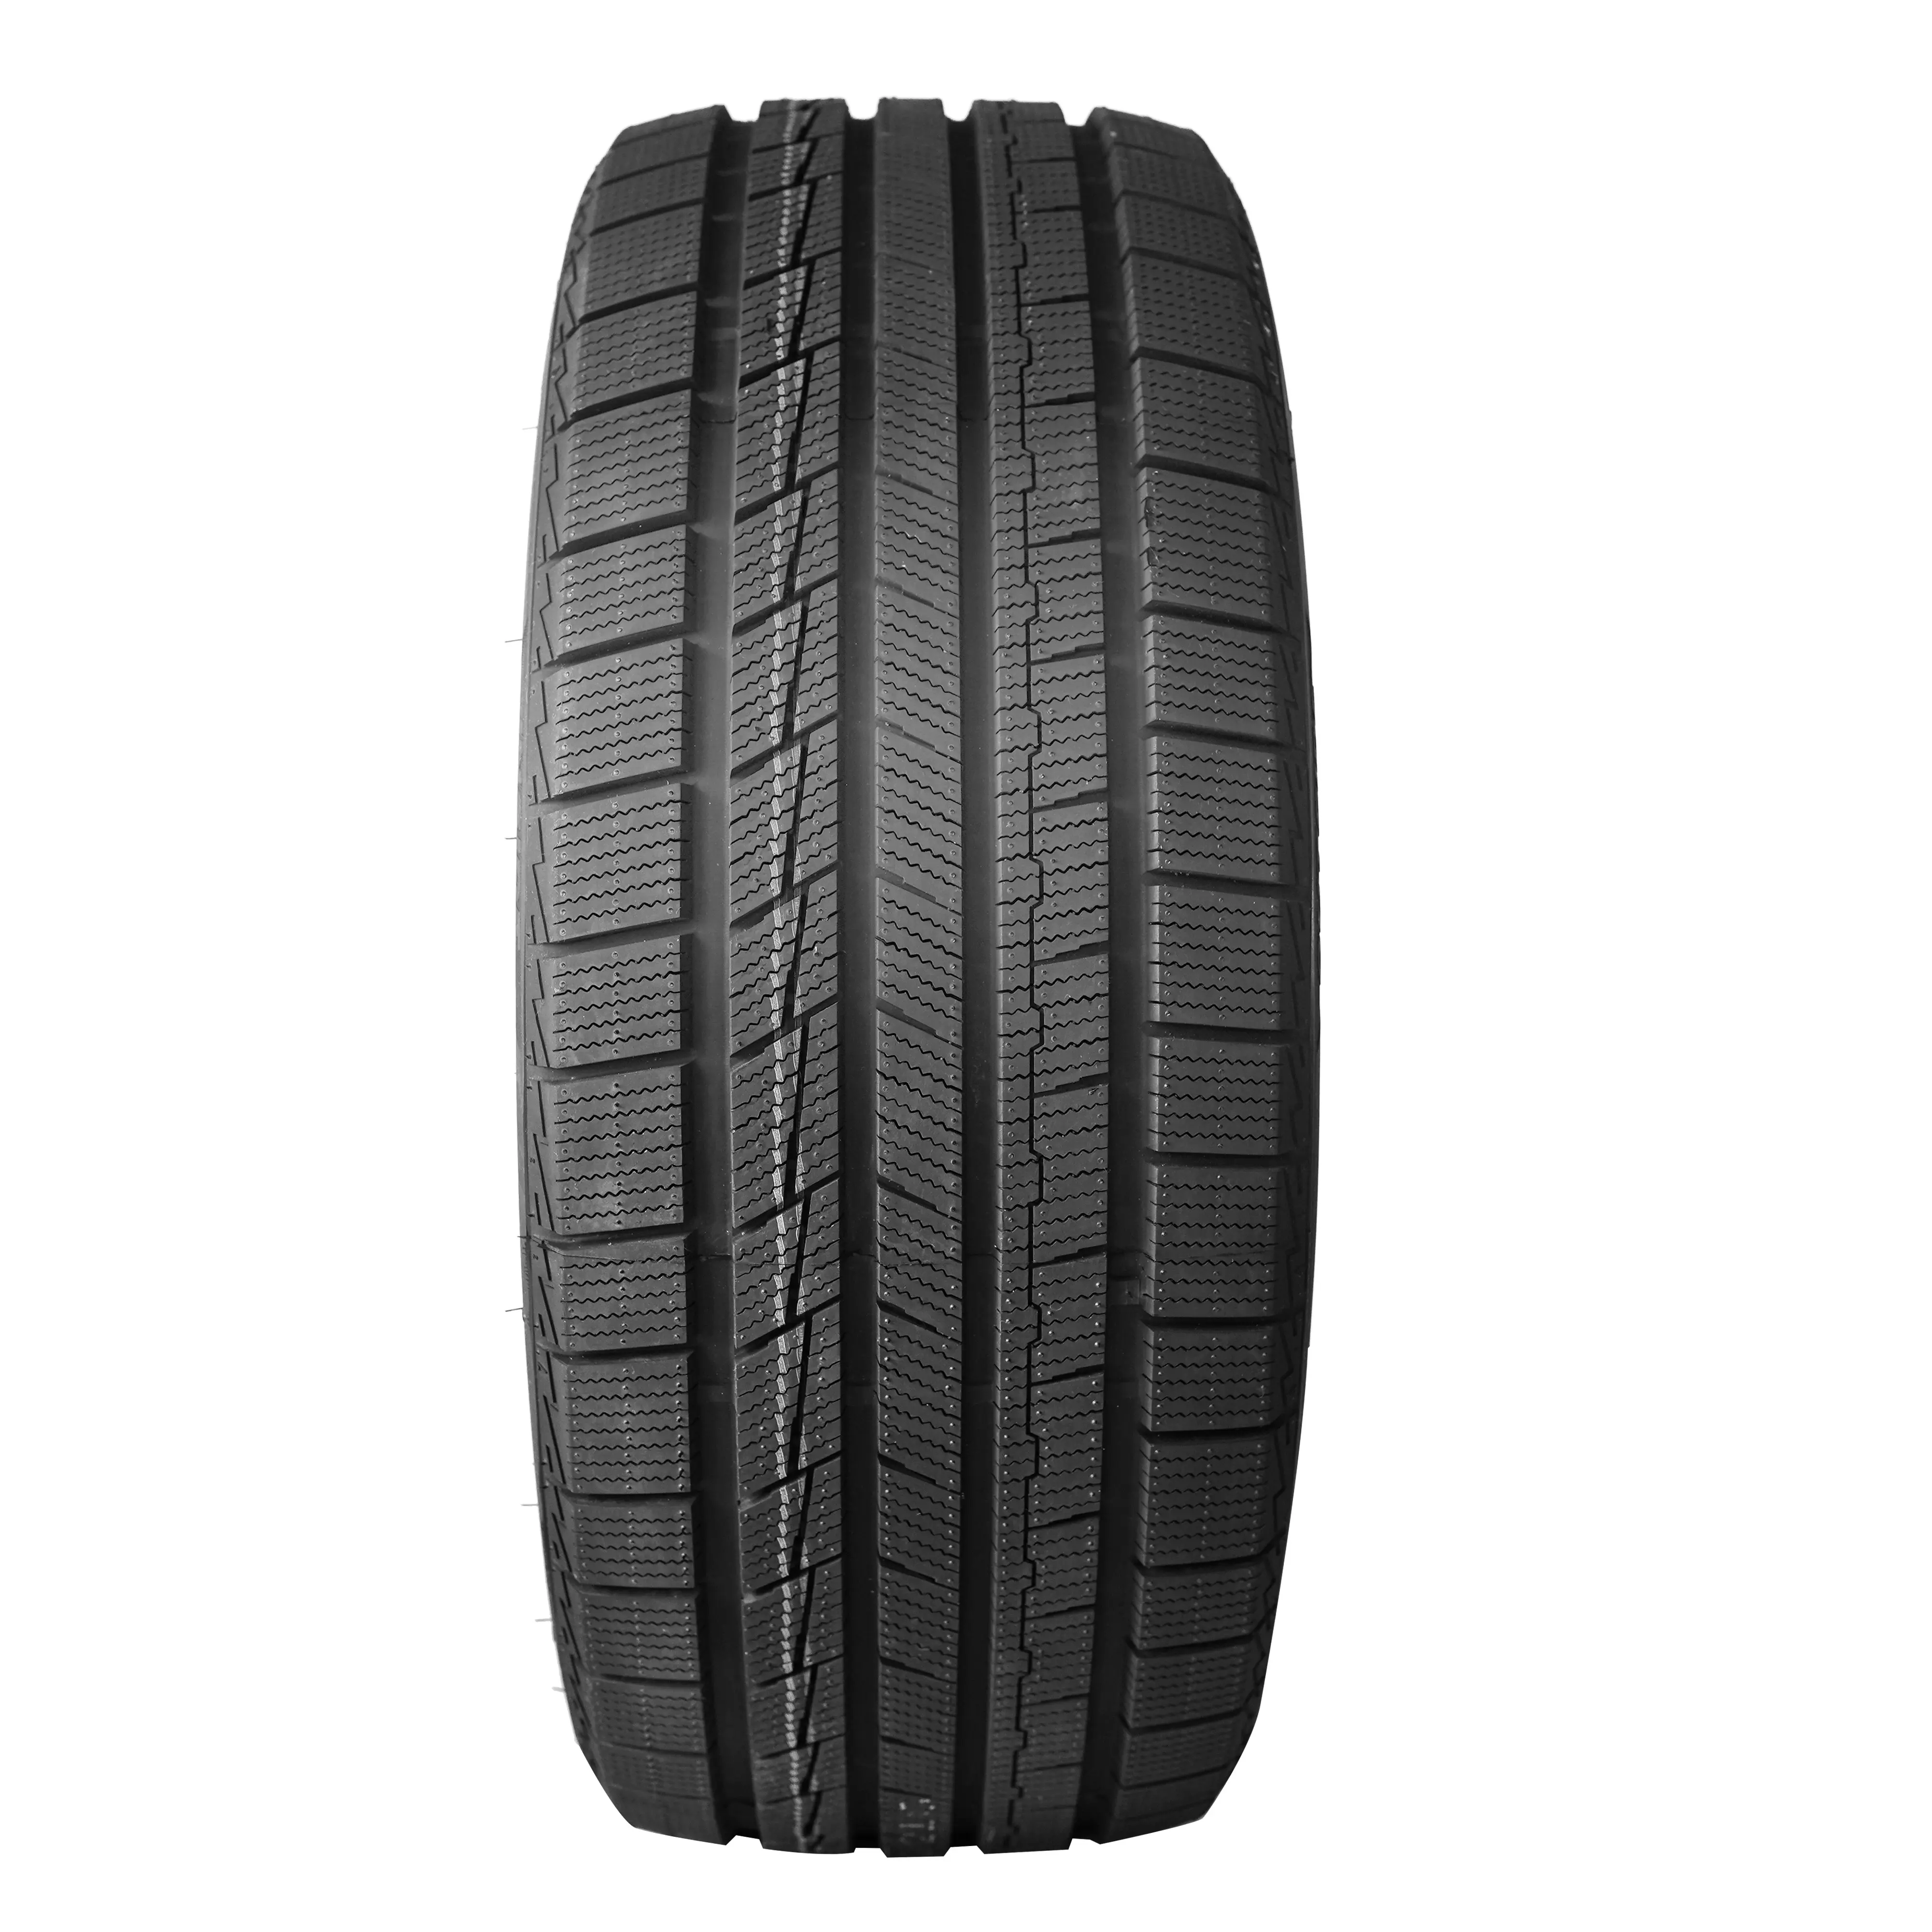 Alibaba best-seller pneus hiver 2055516 2154517 2356018 acheter des pneus bon marché directement auprès de la fabrication chinoise pneus